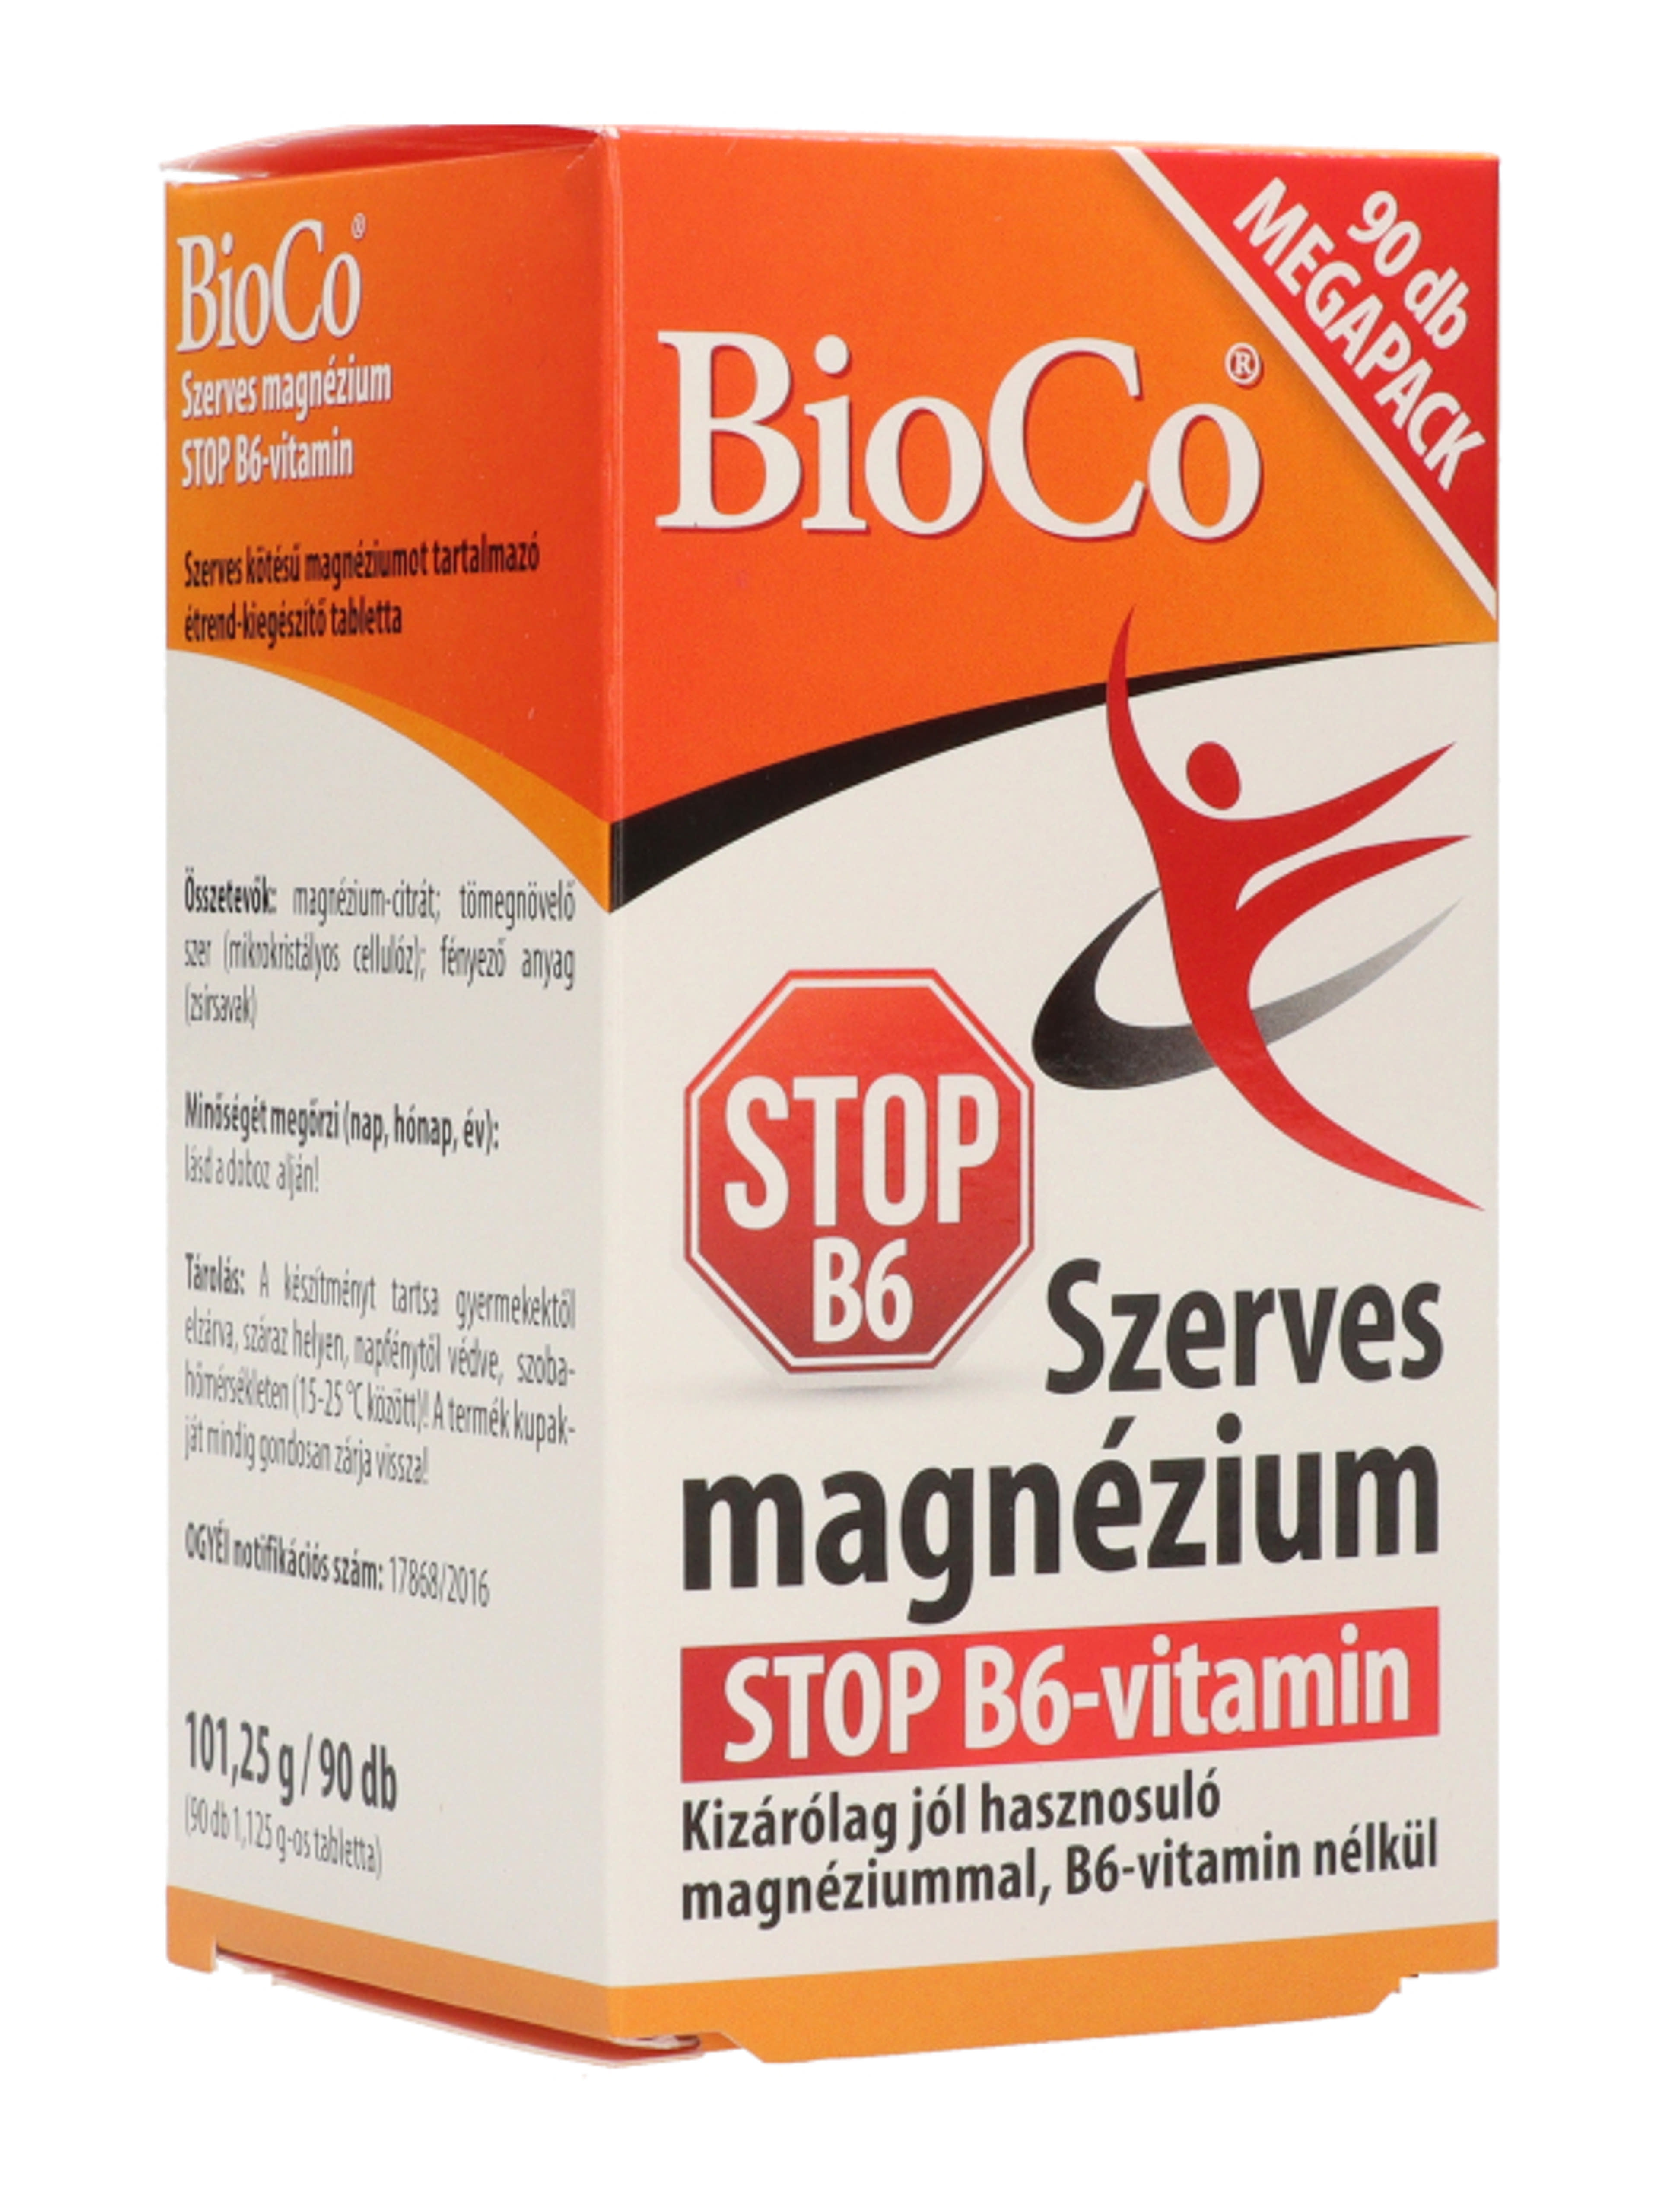 Bioco szerves magnézium stop B6 vitamin tabletta - 90 db-7